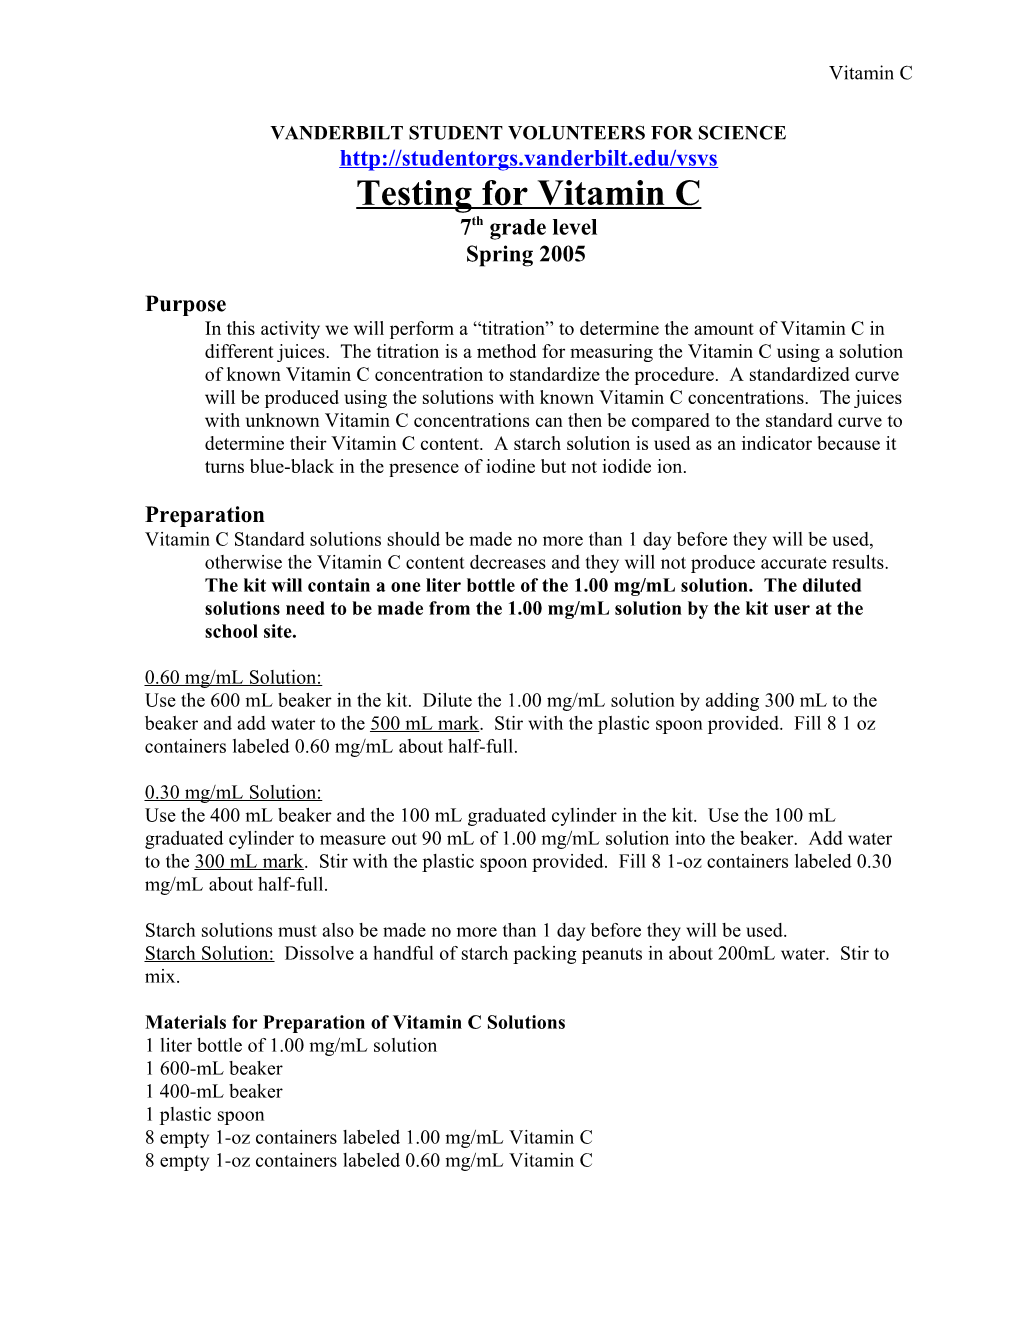 Testing for Vitamin C